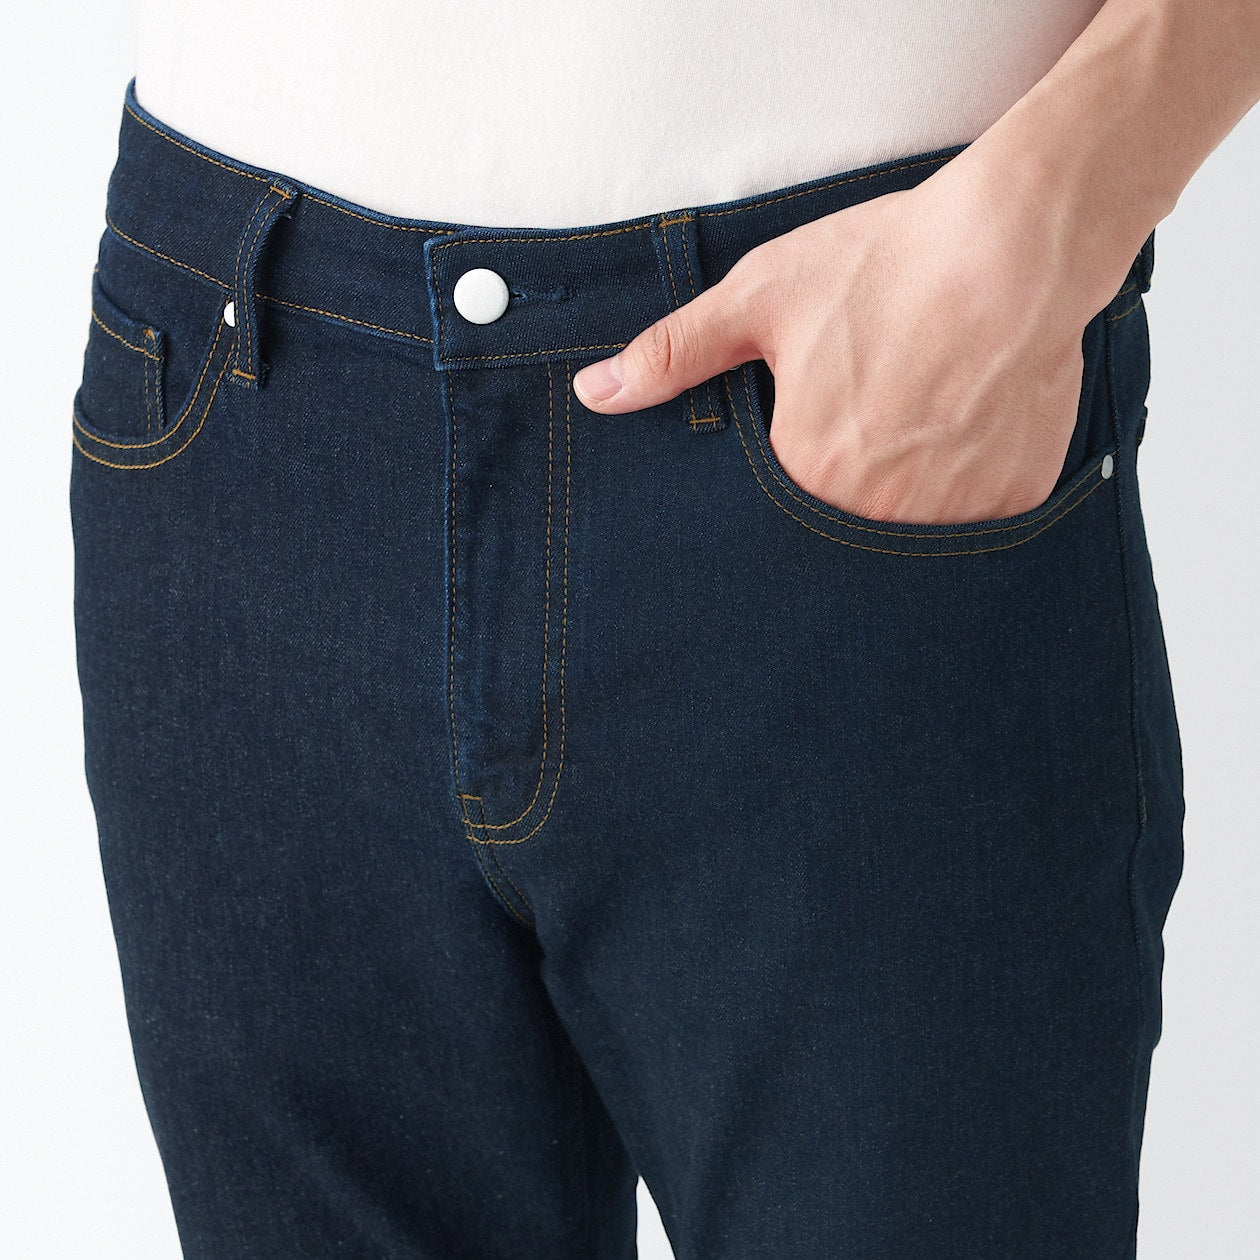 Men's Super Stretch Denim Skinny Pants Dark Navy (L 30inch / 76cm